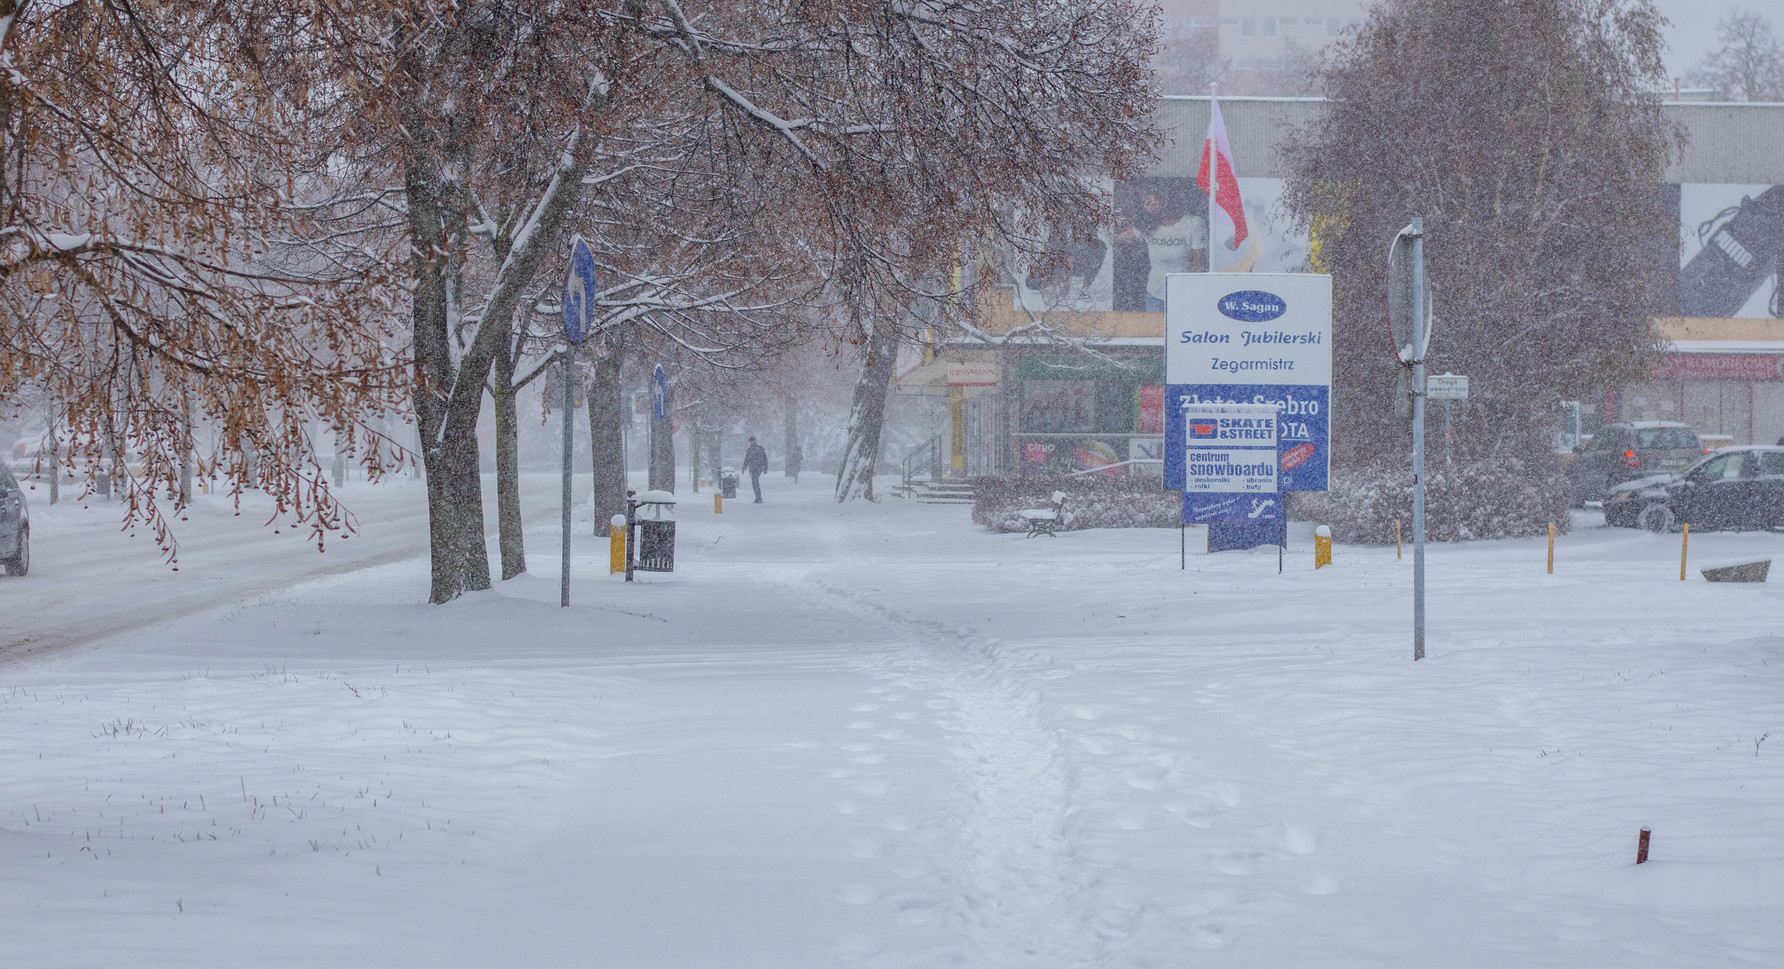 Zdjęcie zaśnieżonej ulicy Centralnej